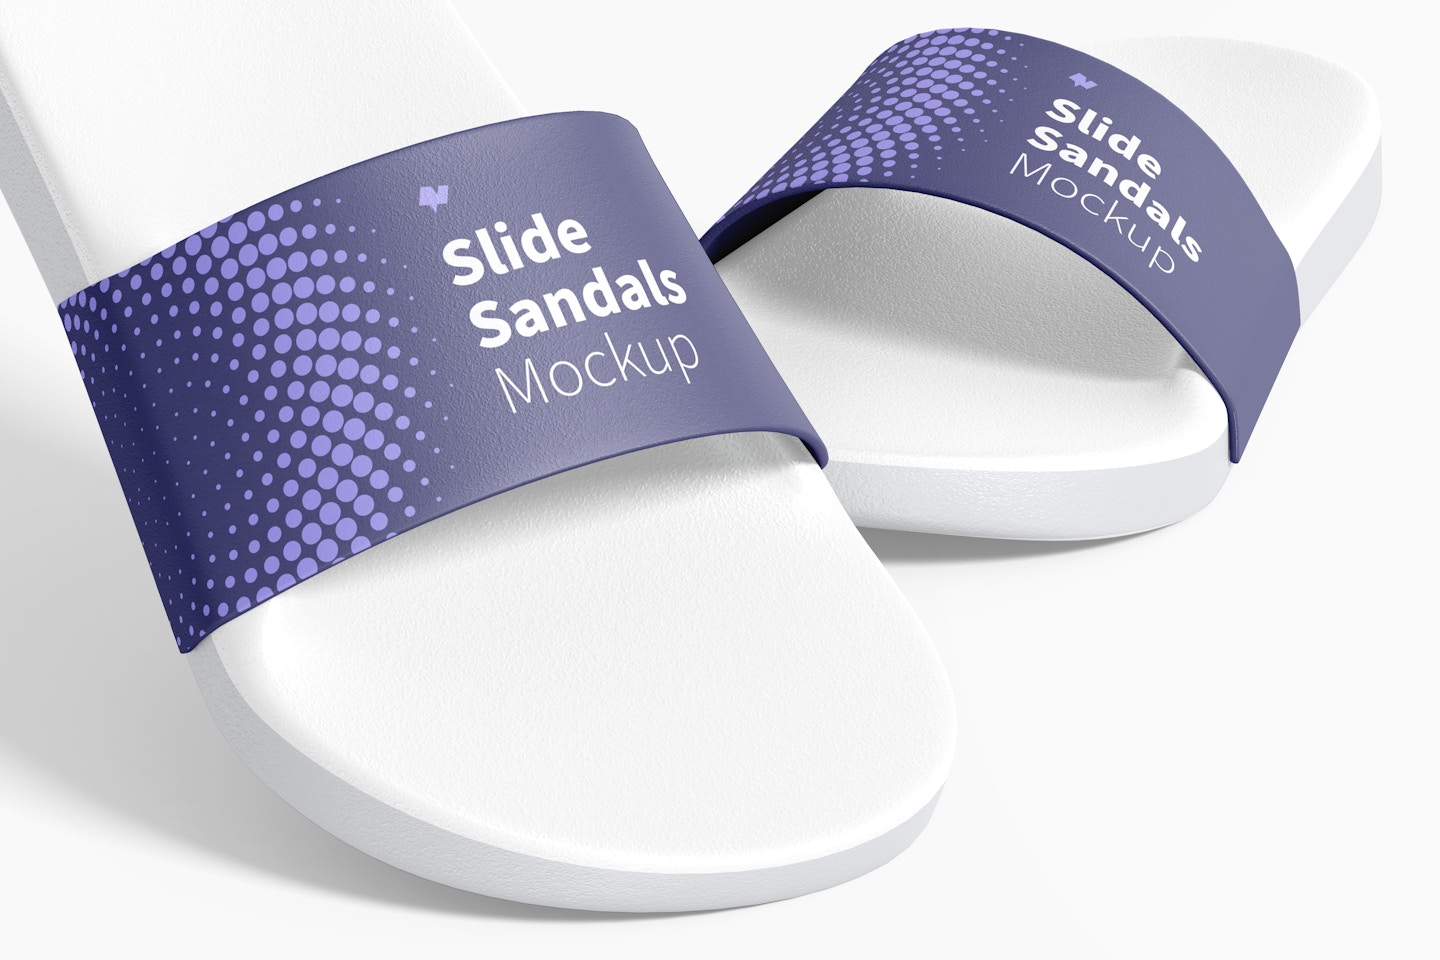 Slide Sandals Mockup, Close-Up